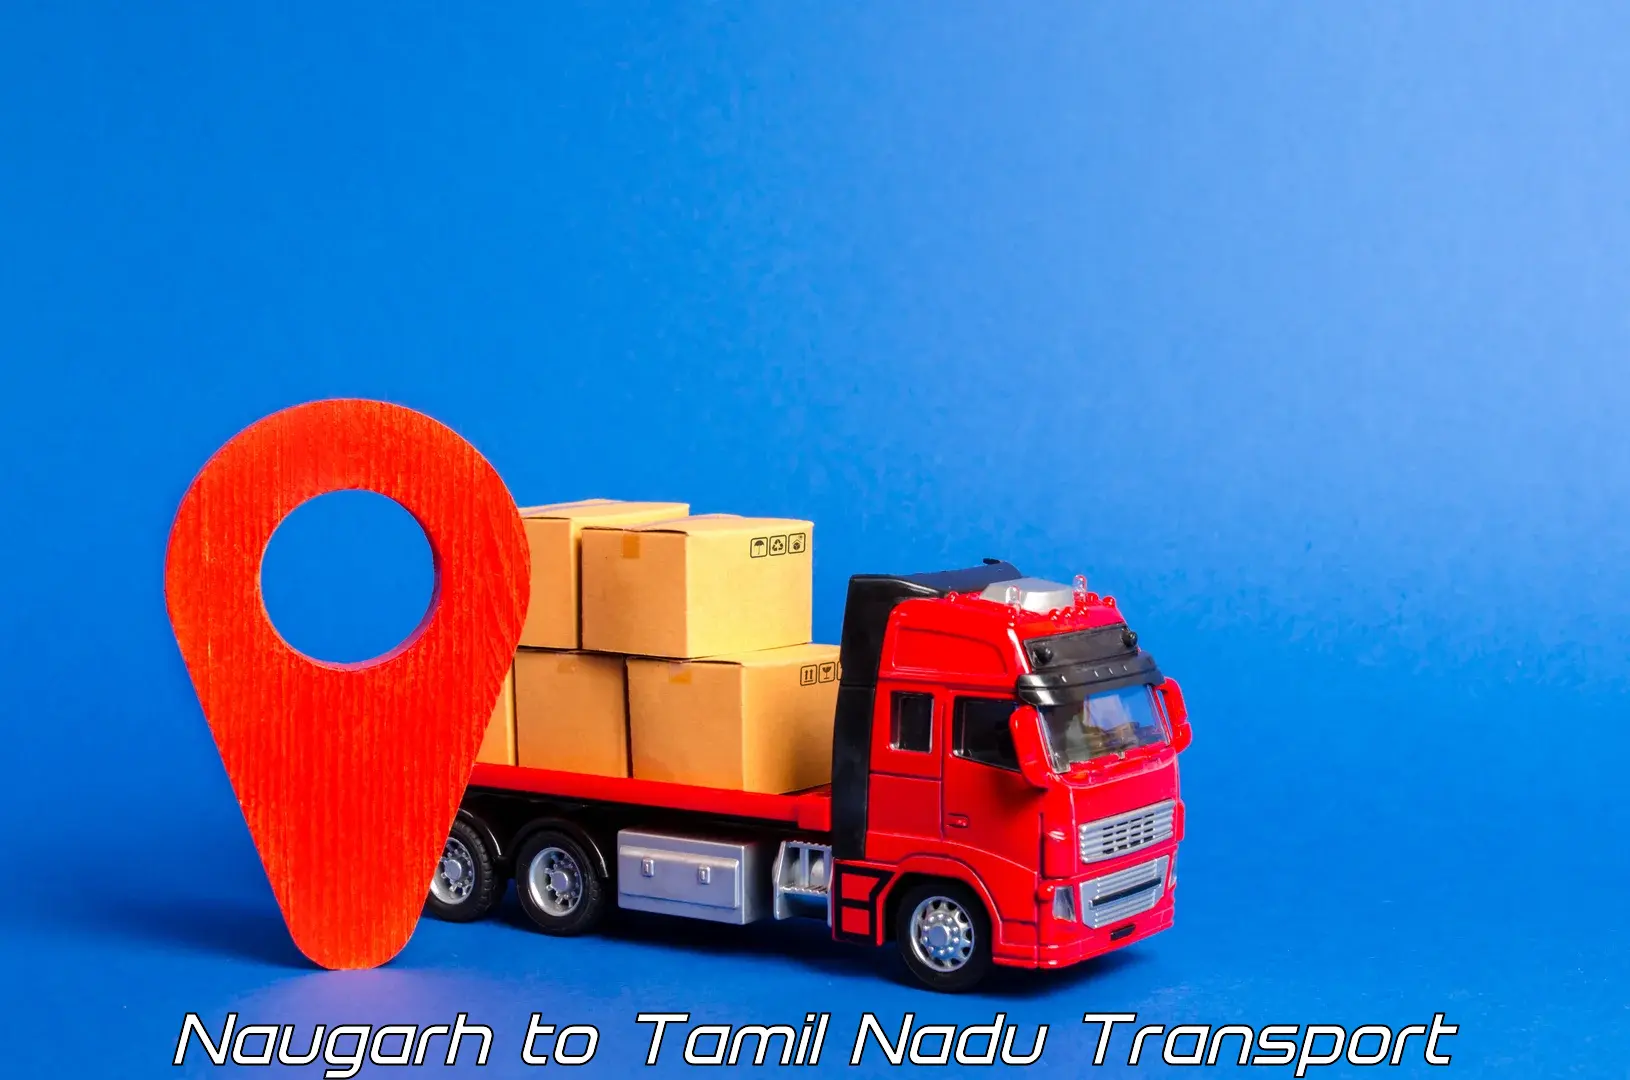 Transportation solution services Naugarh to Tamil Nadu